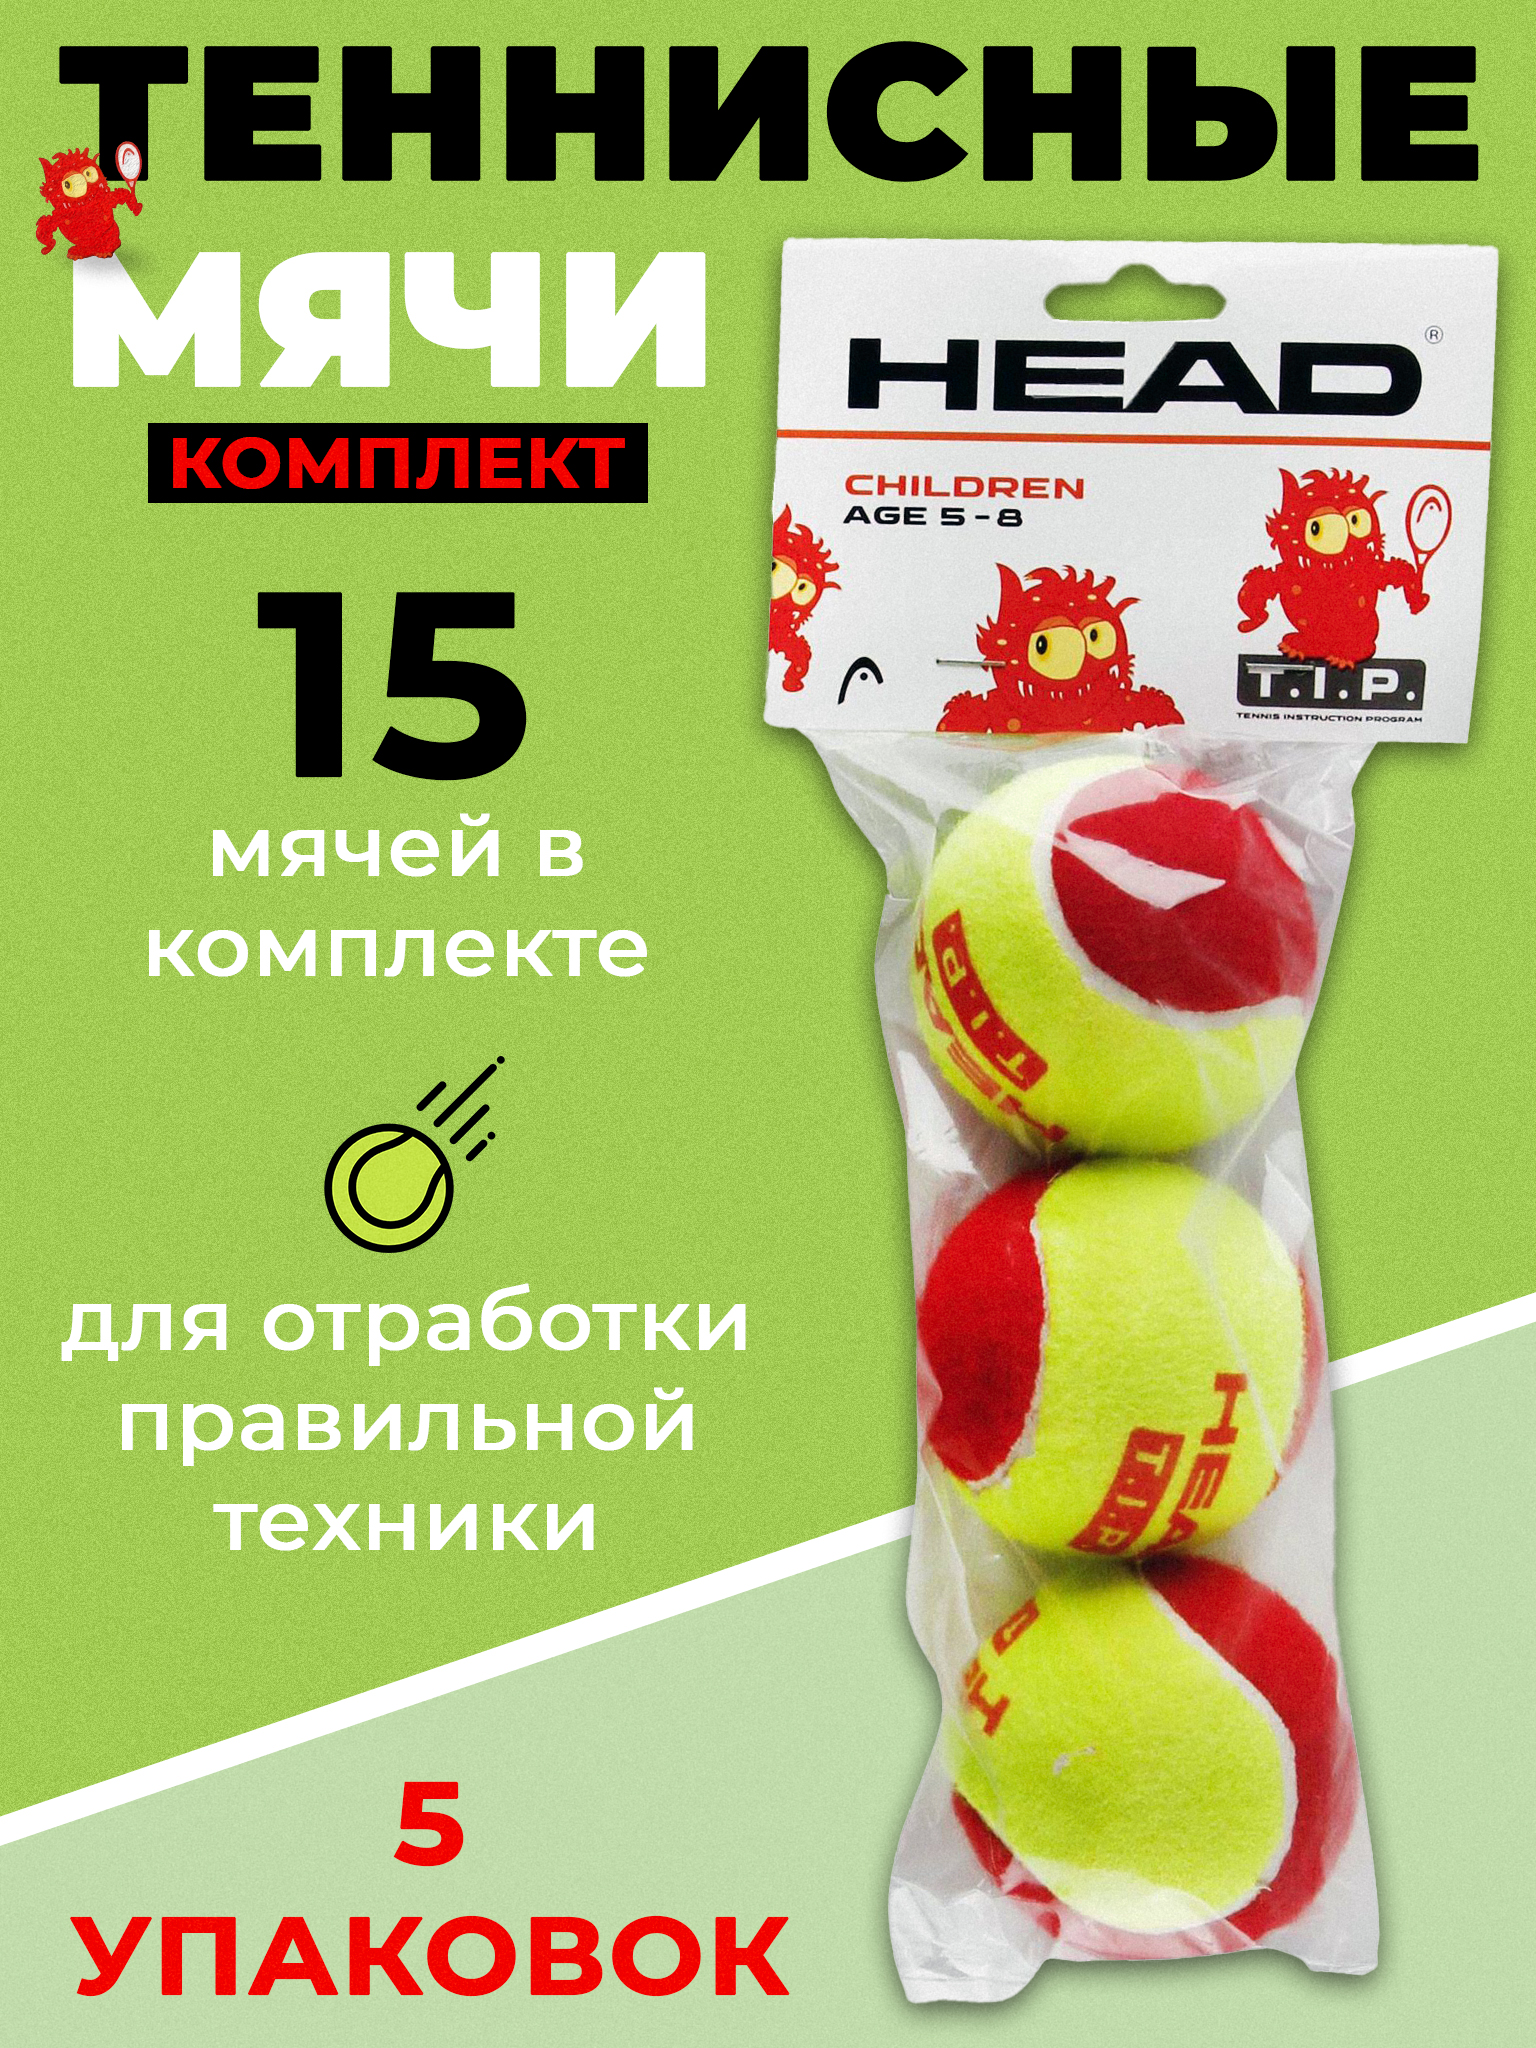 Теннисный мяч Head T.I.P Red 578113, 15 мячей в комплекте